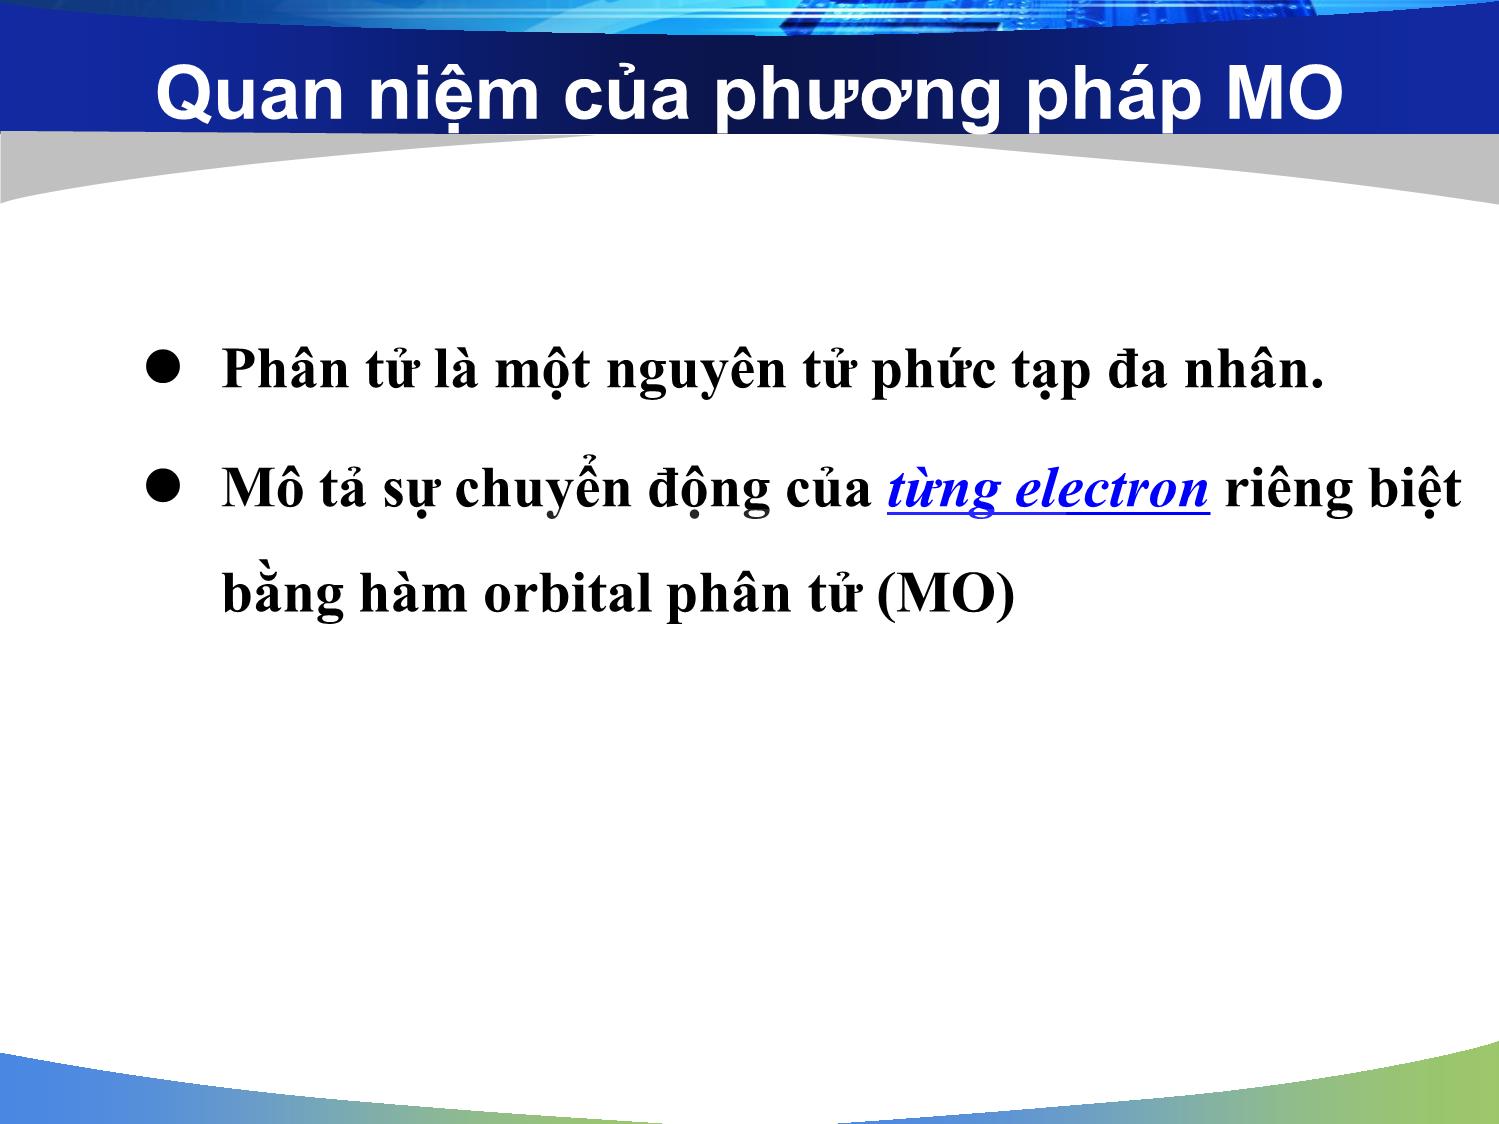 Bài giảng môn Hóa đại cương: Phương pháp orbital phân tử (Molecular Orbital - MO) - Nguyễn Minh Kha trang 5